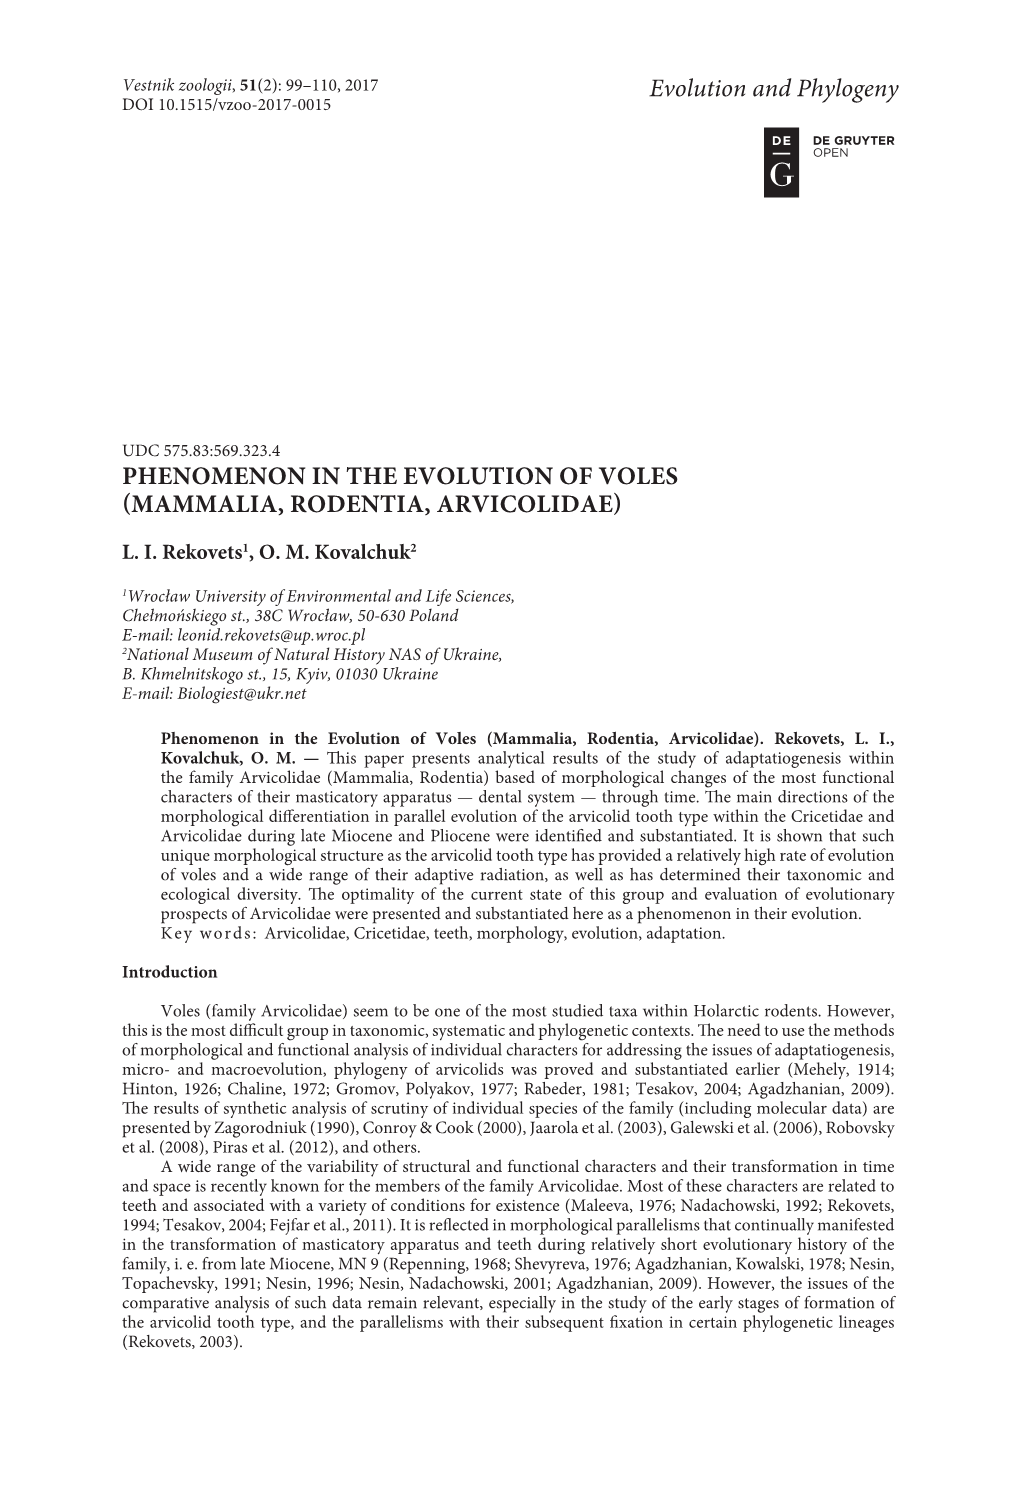 Phenomenon in the Evolution of Voles (Mammalia, Rodentia, Arvicolidae)